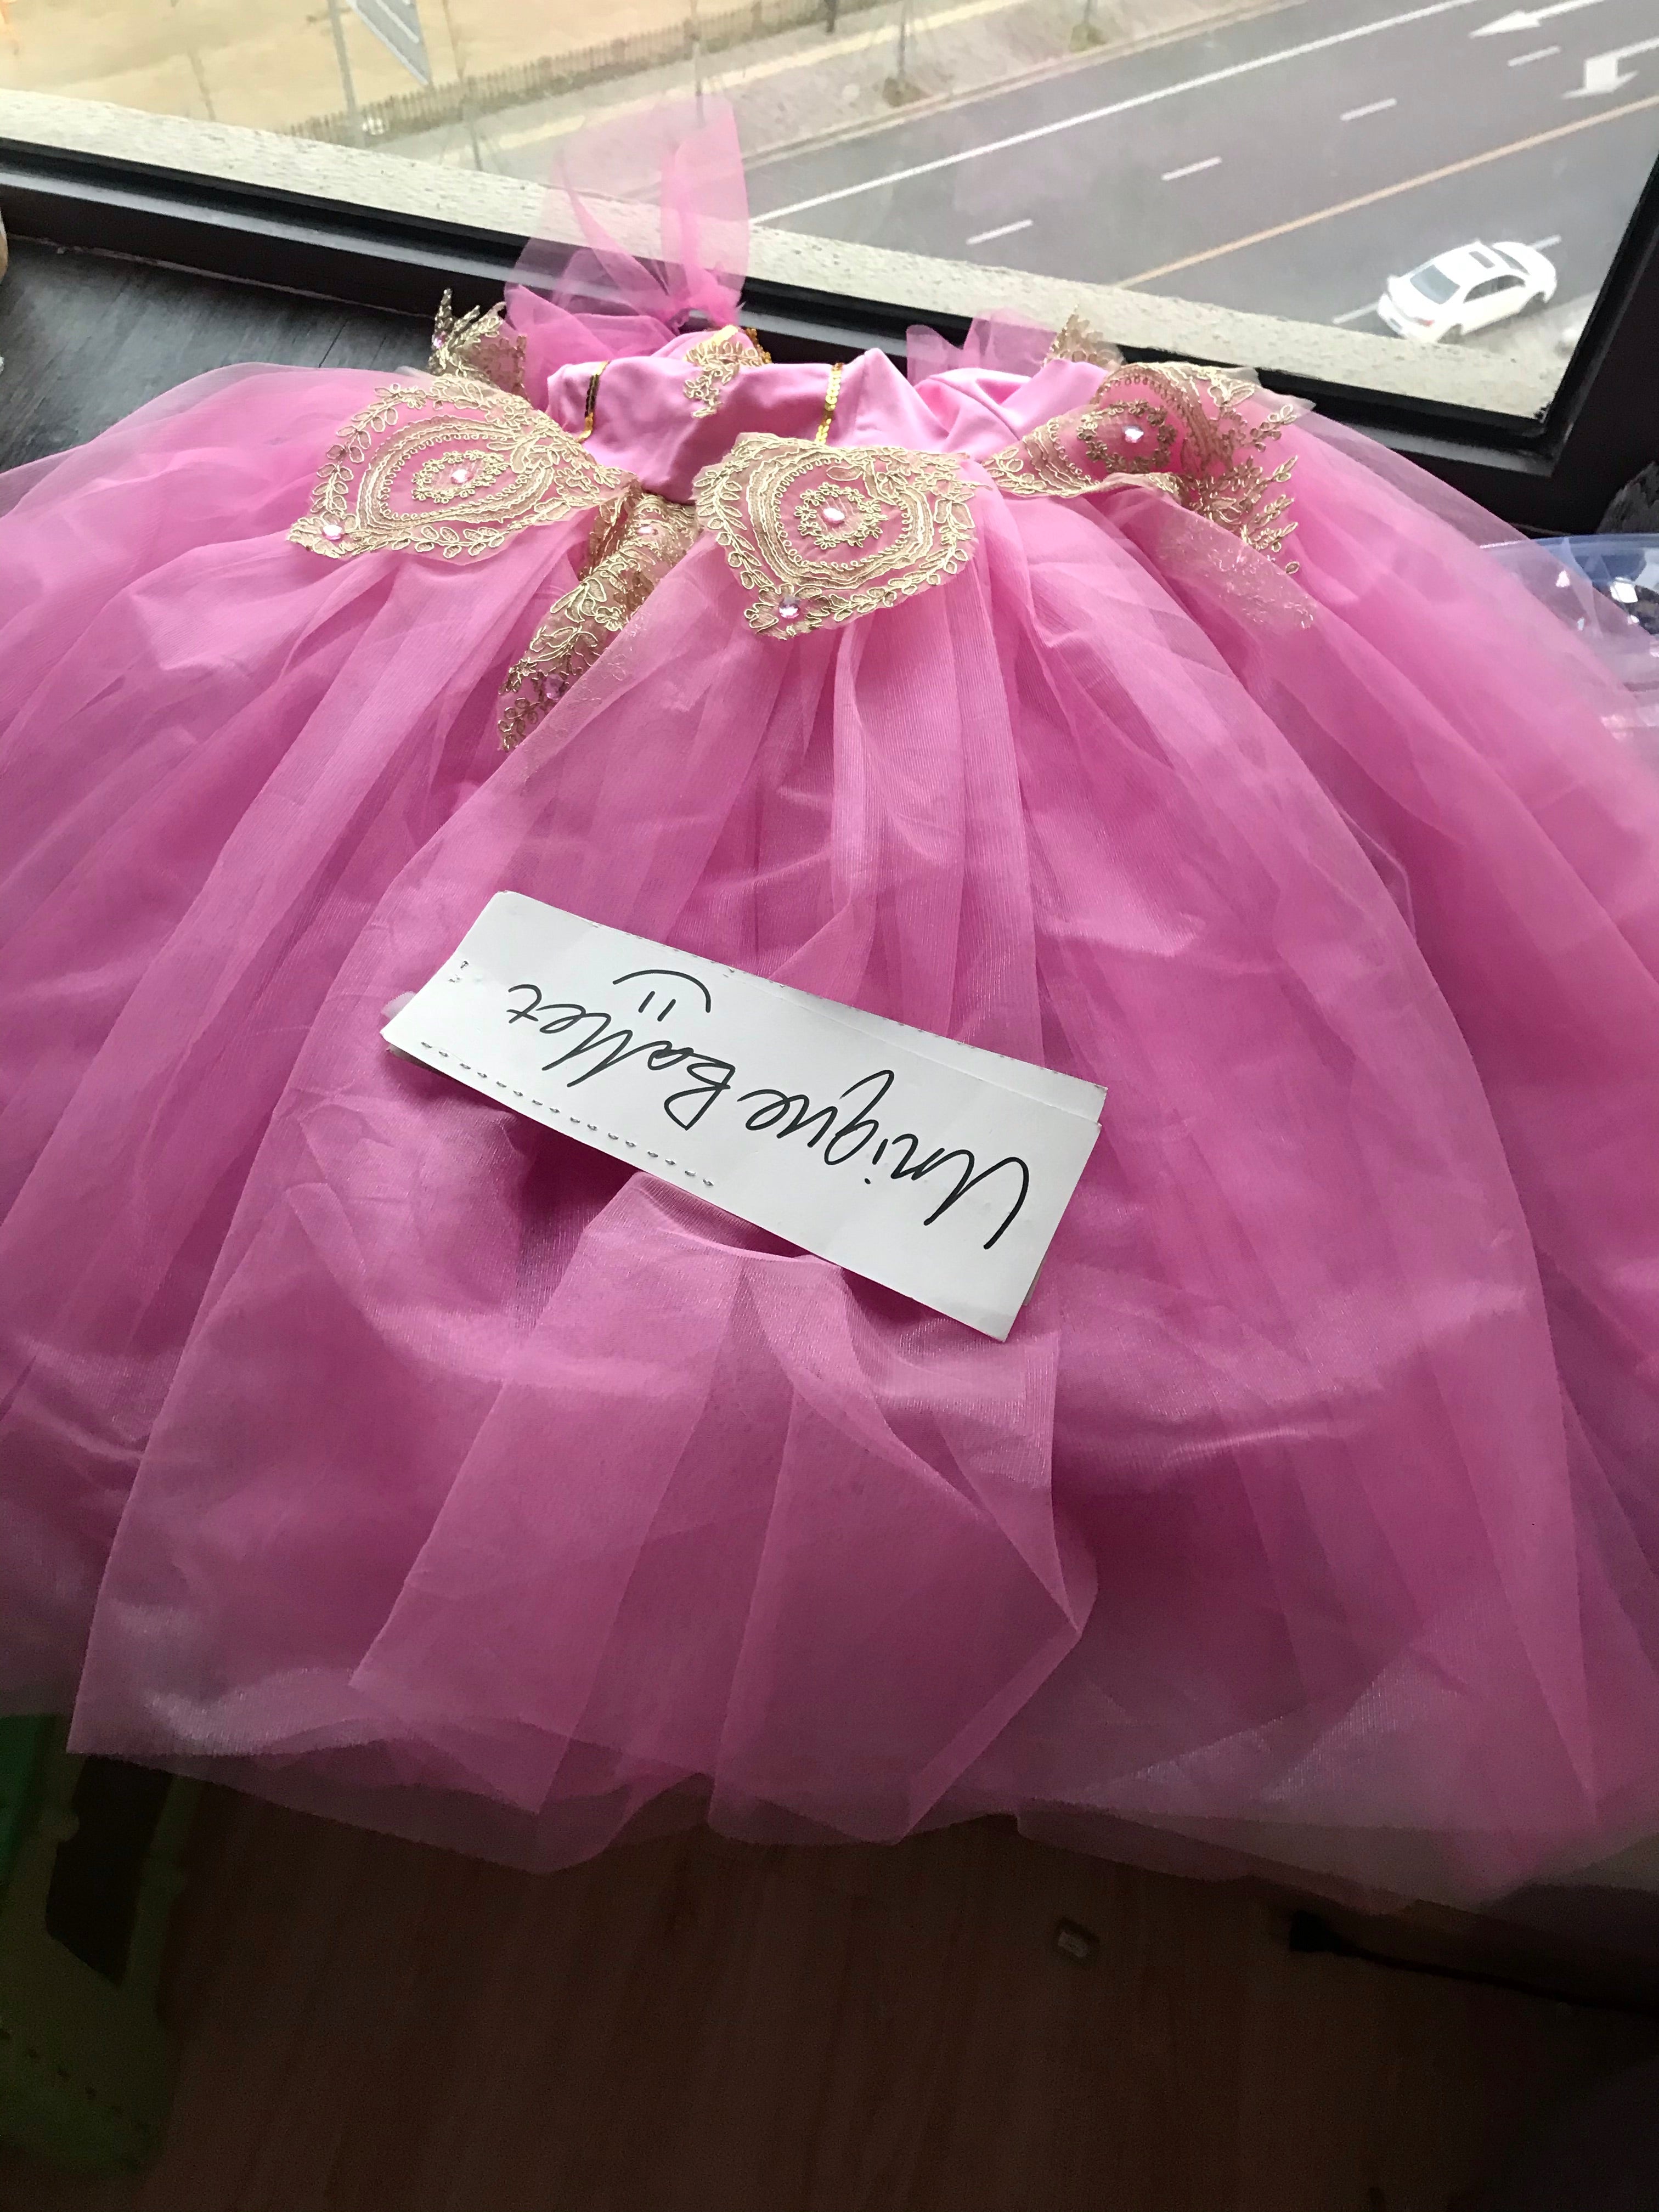 Sleeping Beauty Corps Ballet Dance Pink Golden Trims Romantic Ballet TuTu Dress Costume